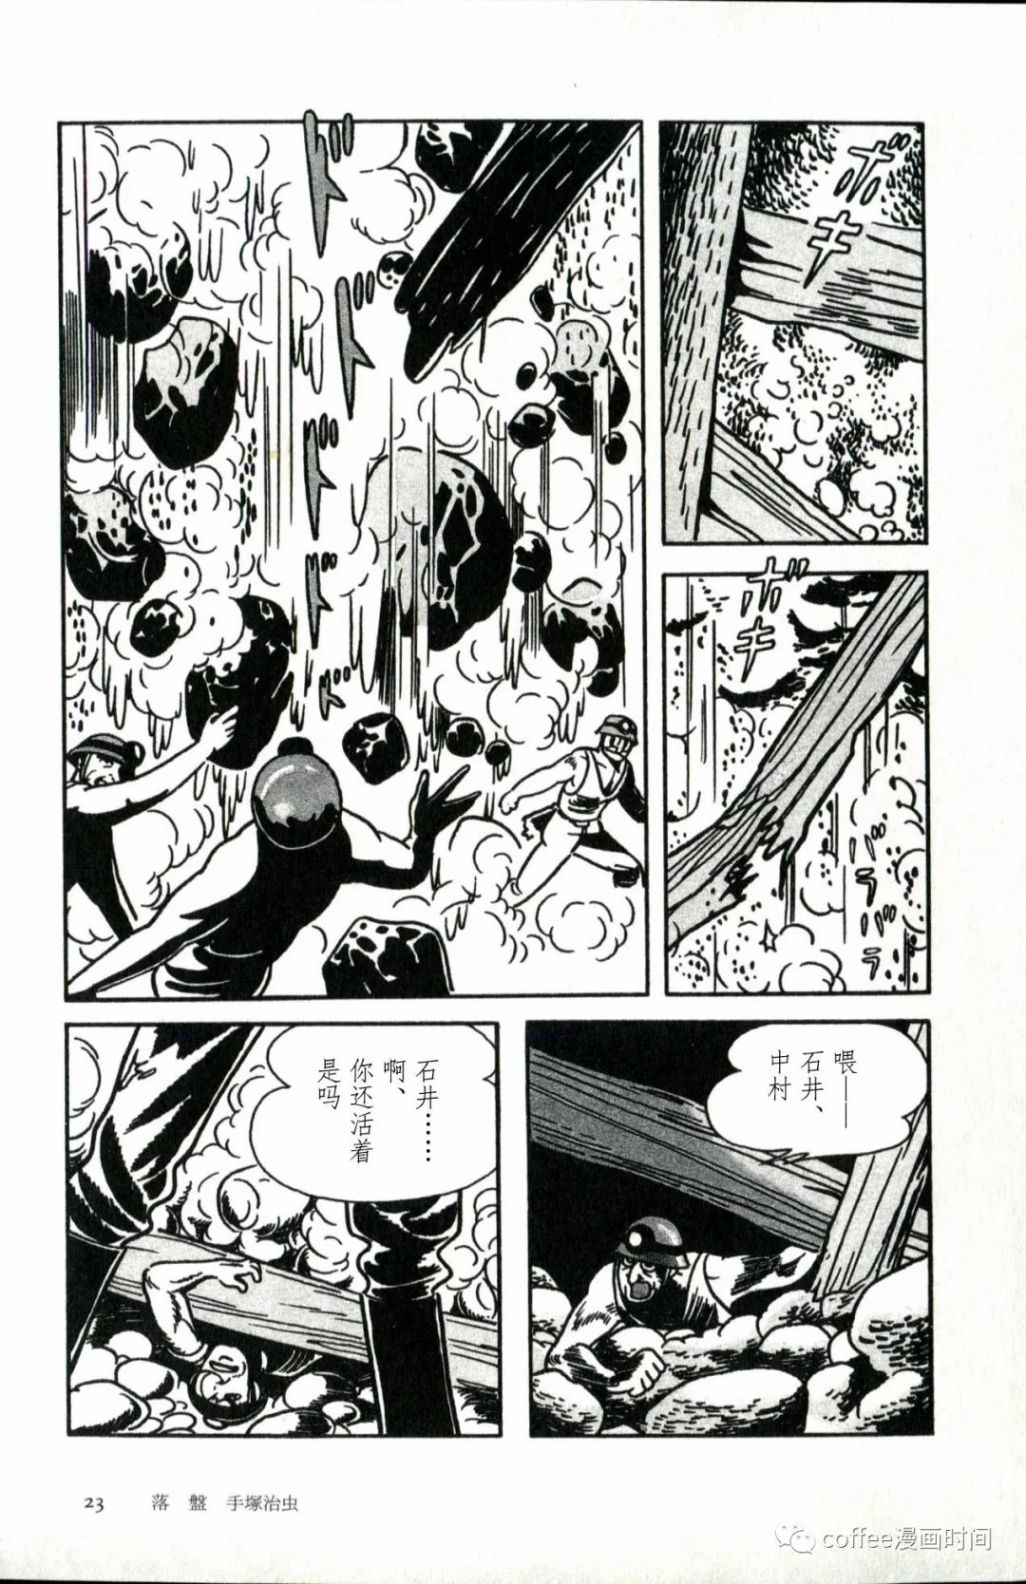 日本短篇漫畫傑作集 - 手冢治虫《落盤》 - 4